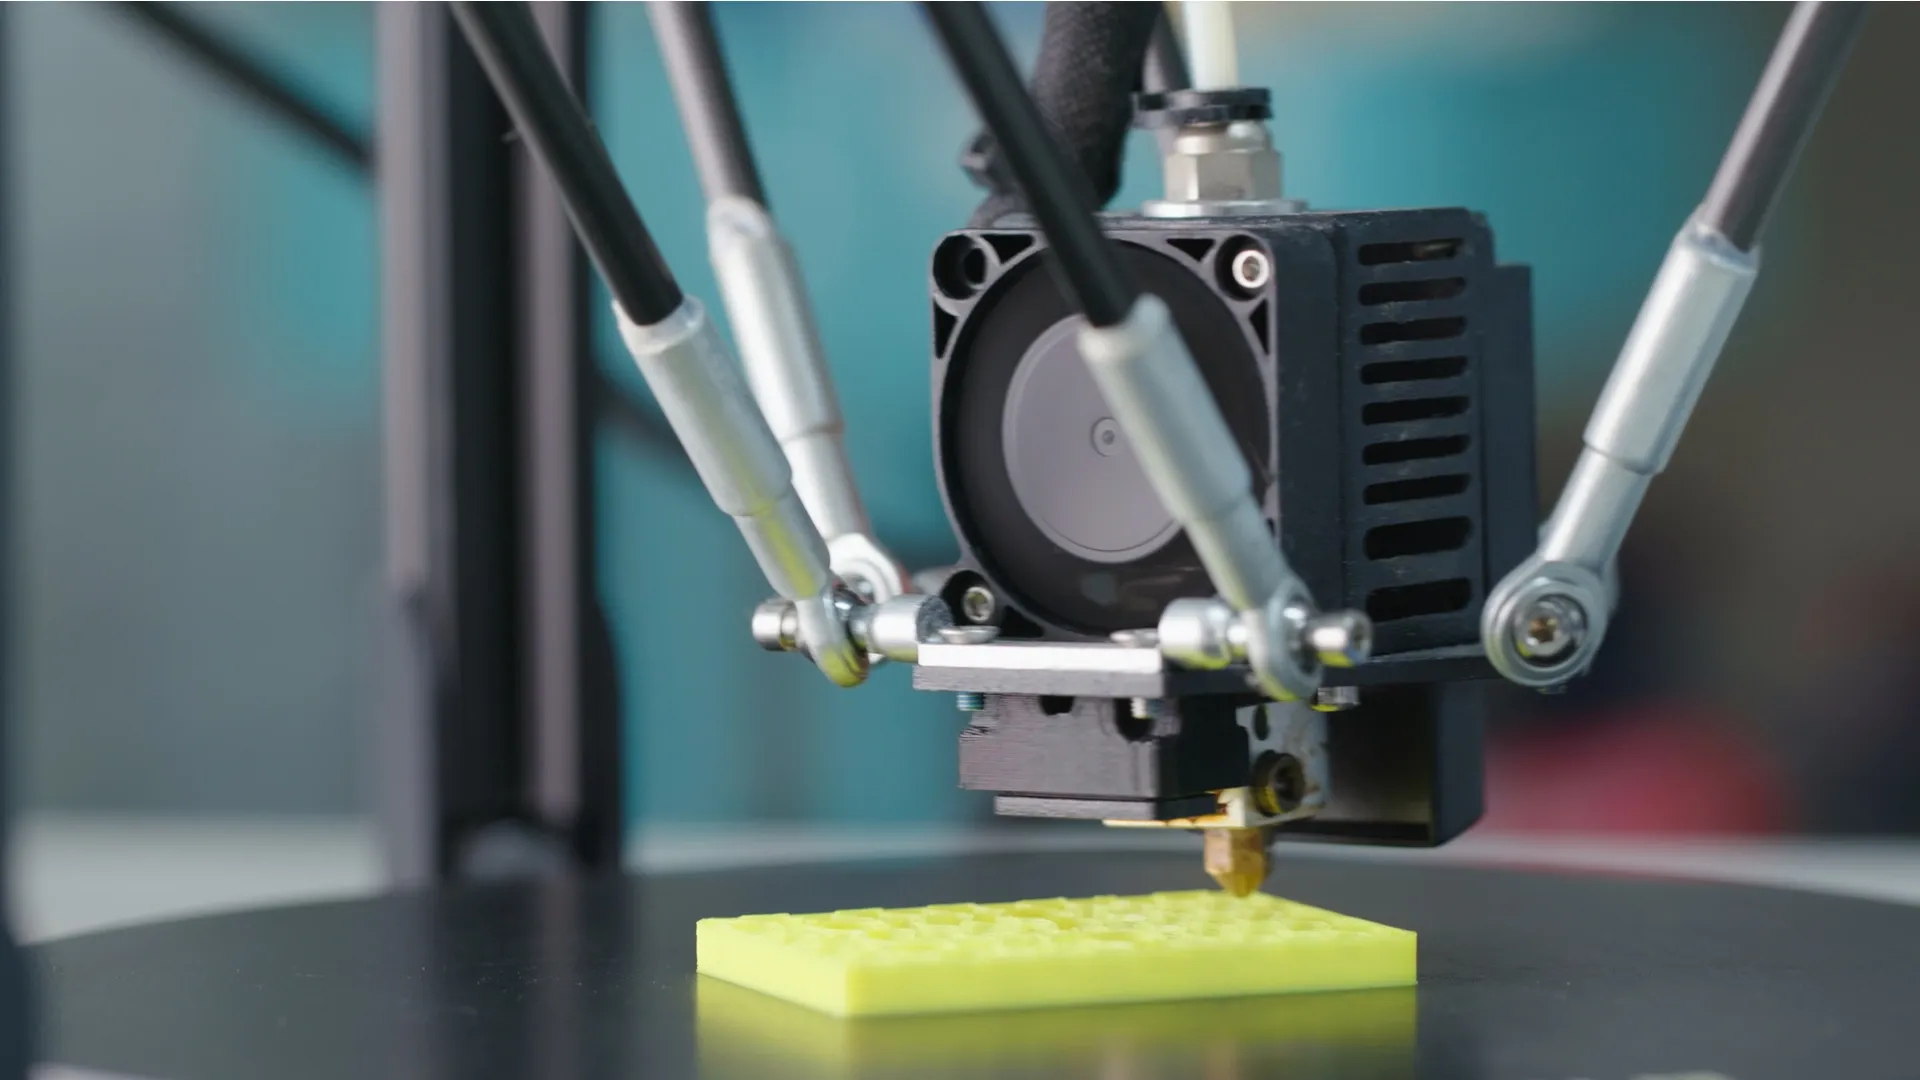 Есть вероятность, что импортные автозапчасти начнут штамповать на 3D-принтере. Фото: leungchopan / Shutterstock.com